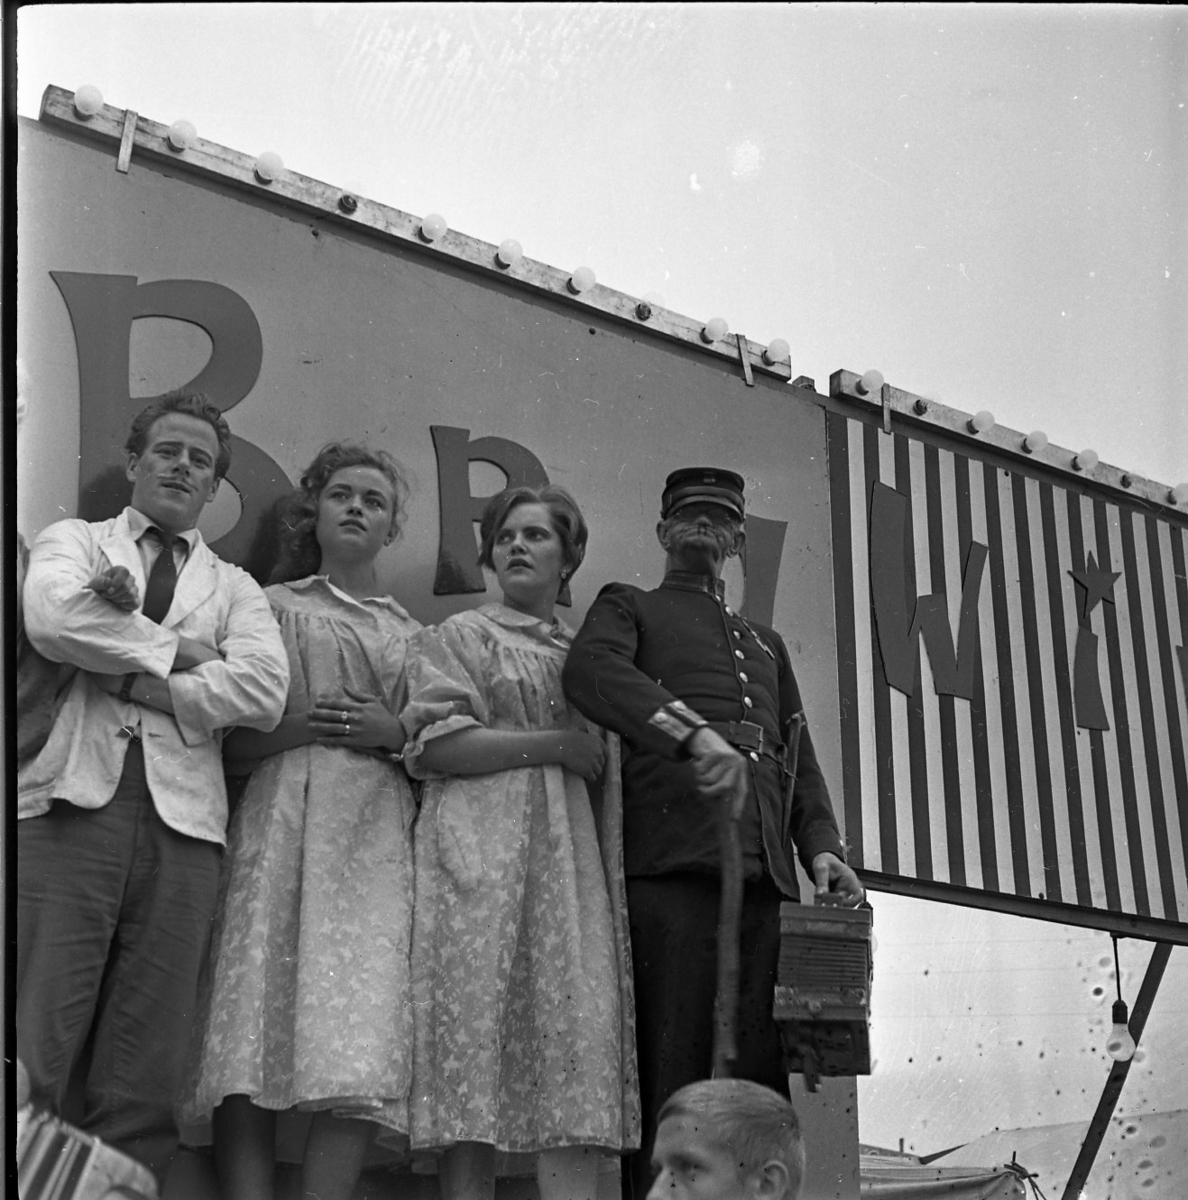 Ett scenuppträdande i samband med Gränna marknad. Två kvinnor och två män står arm i arm på ett podie. En av männen håller ett dragspel i handen.